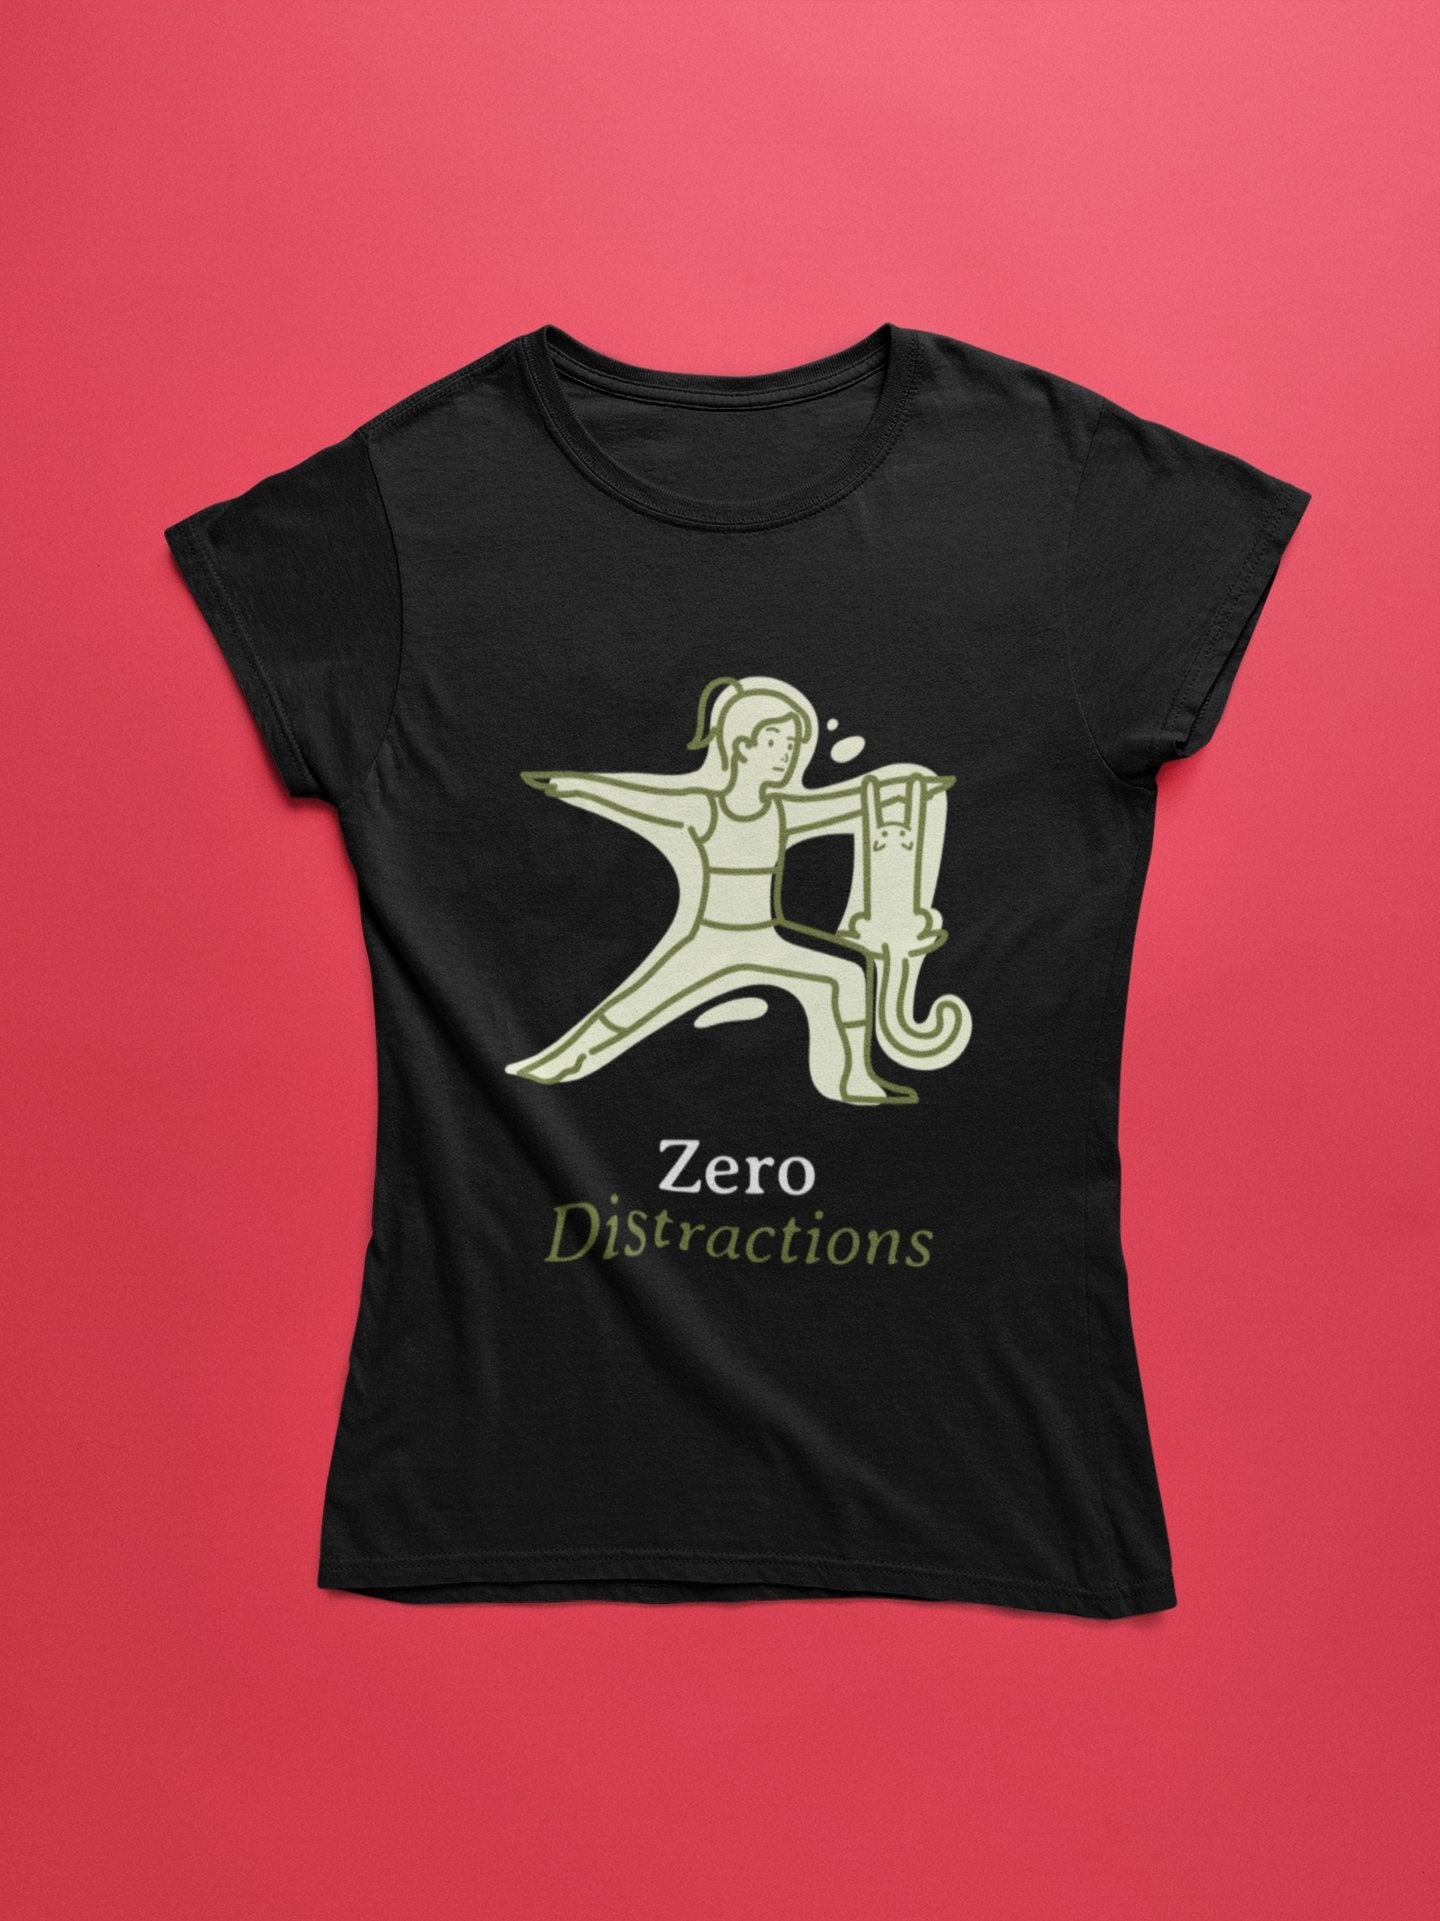 thelegalgang,Zero Distraction Design Yoga T shirt for Women,WOMEN.